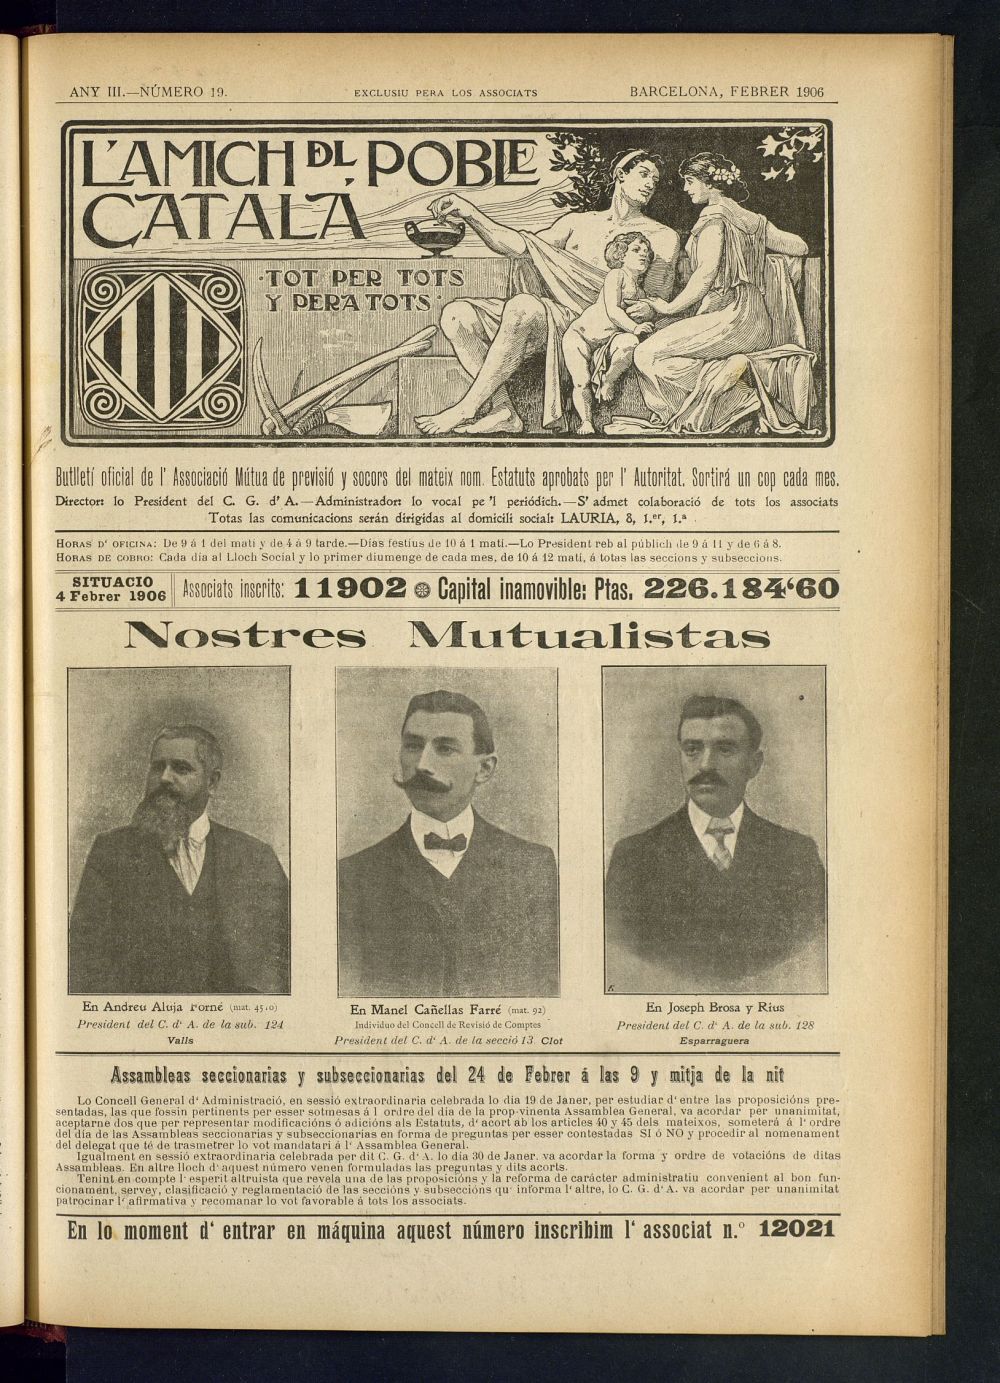 Lamich del poble catal: butllet oficial de lassociacio, ques publicara una volta cada mes de febrer de 1906